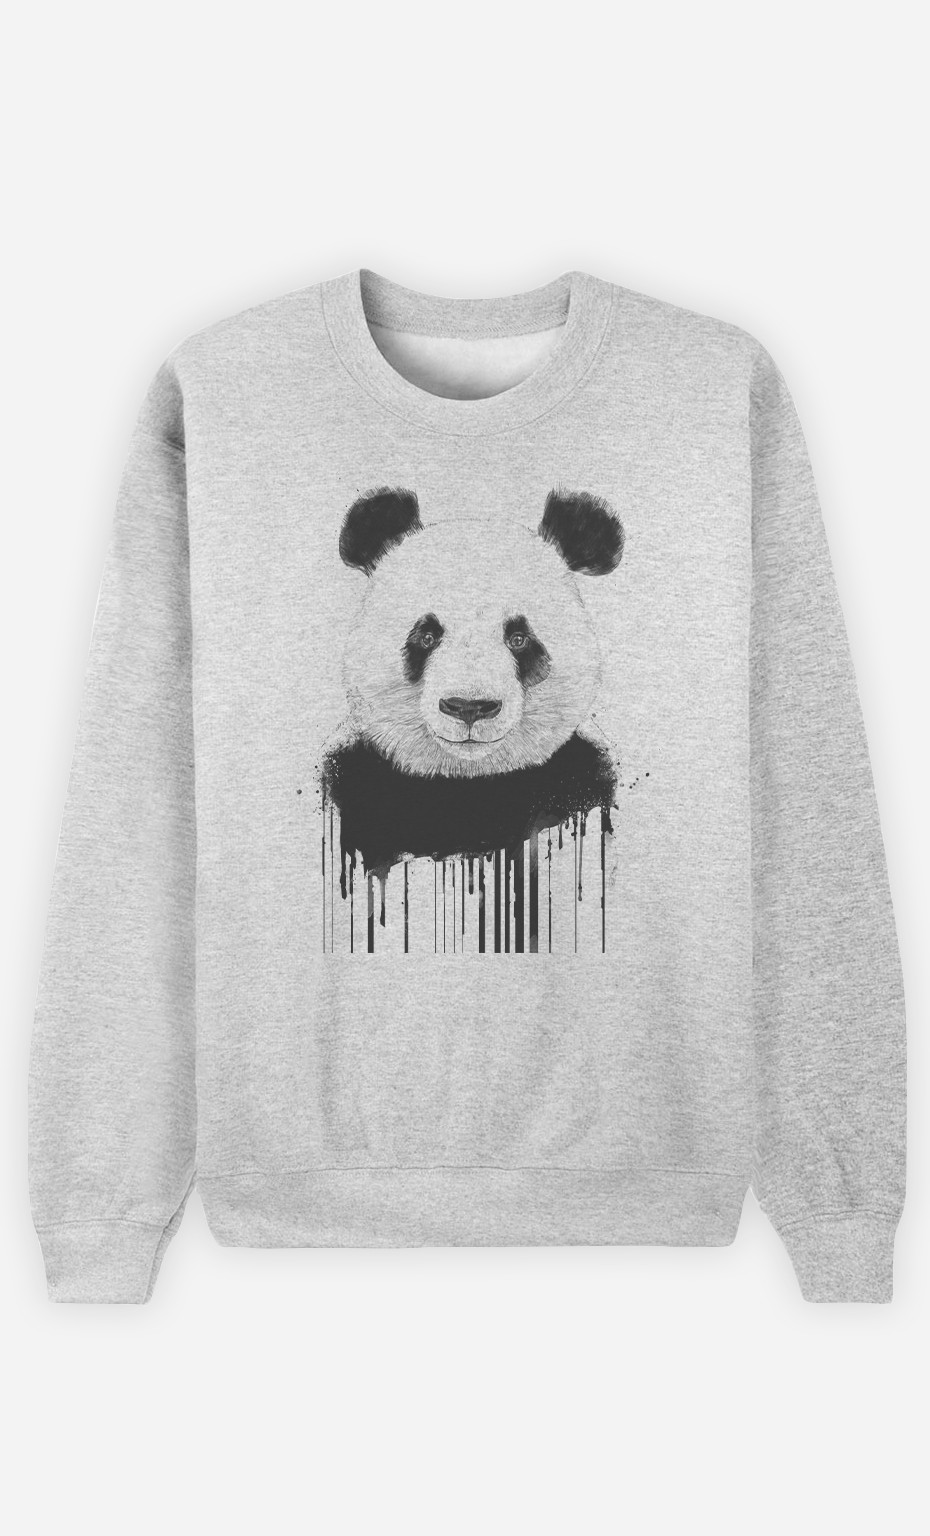 Man Sweatshirt Graffiti Panda